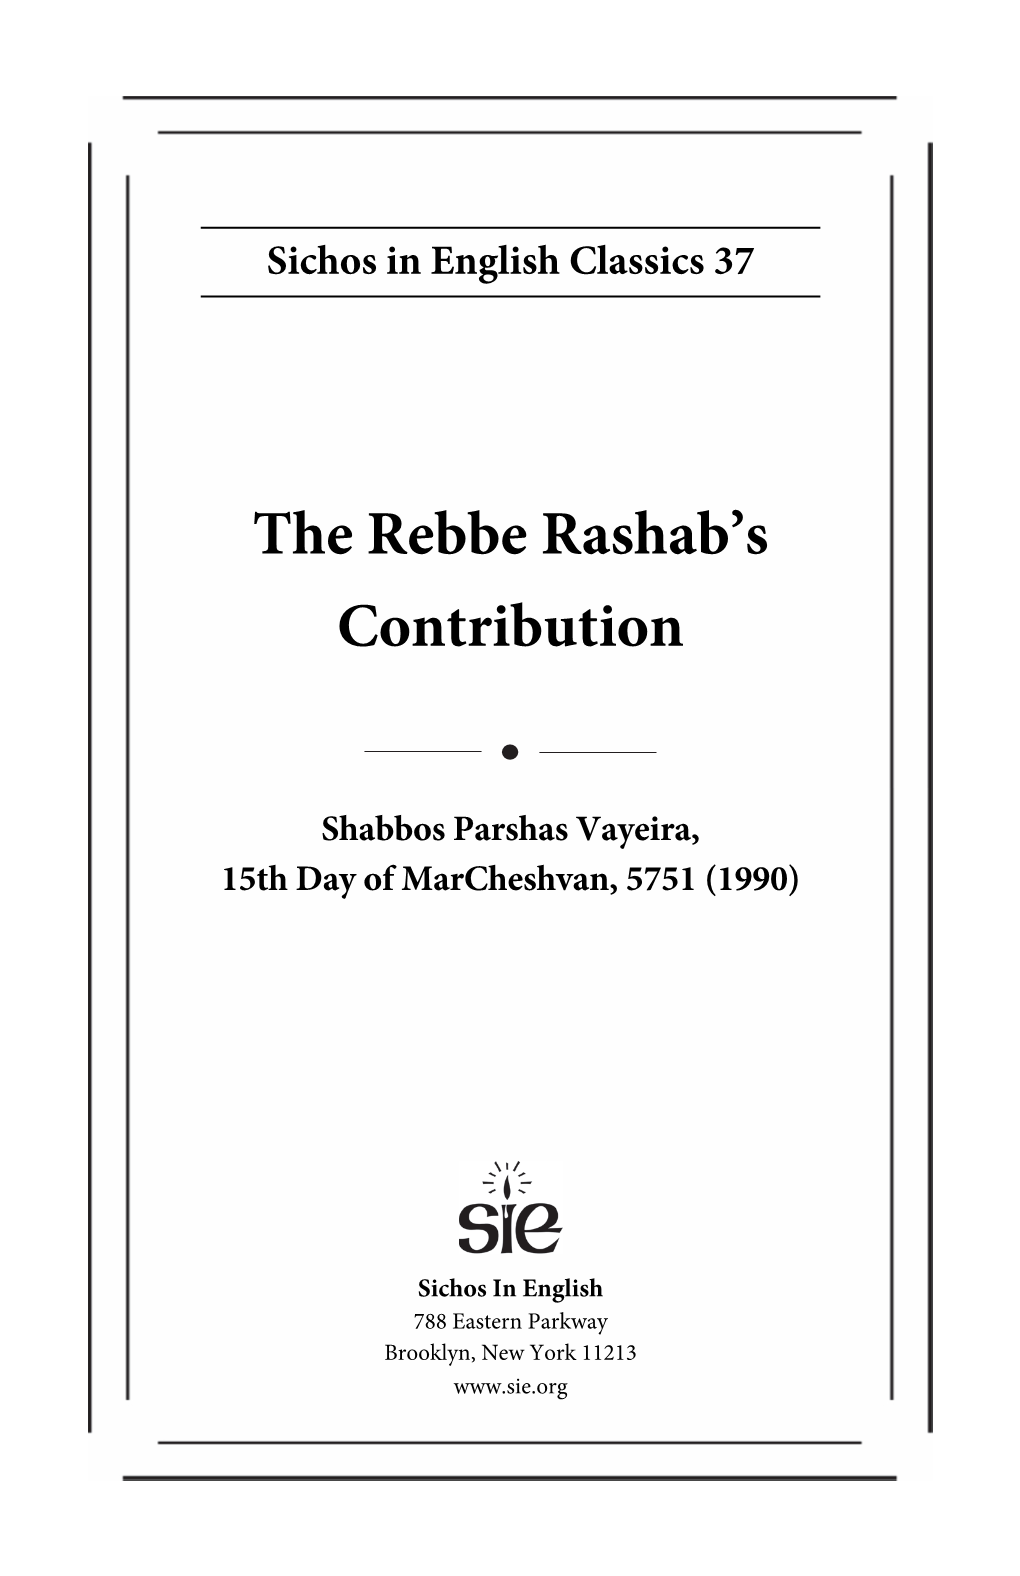 The Rebbe Rashab's Contribution